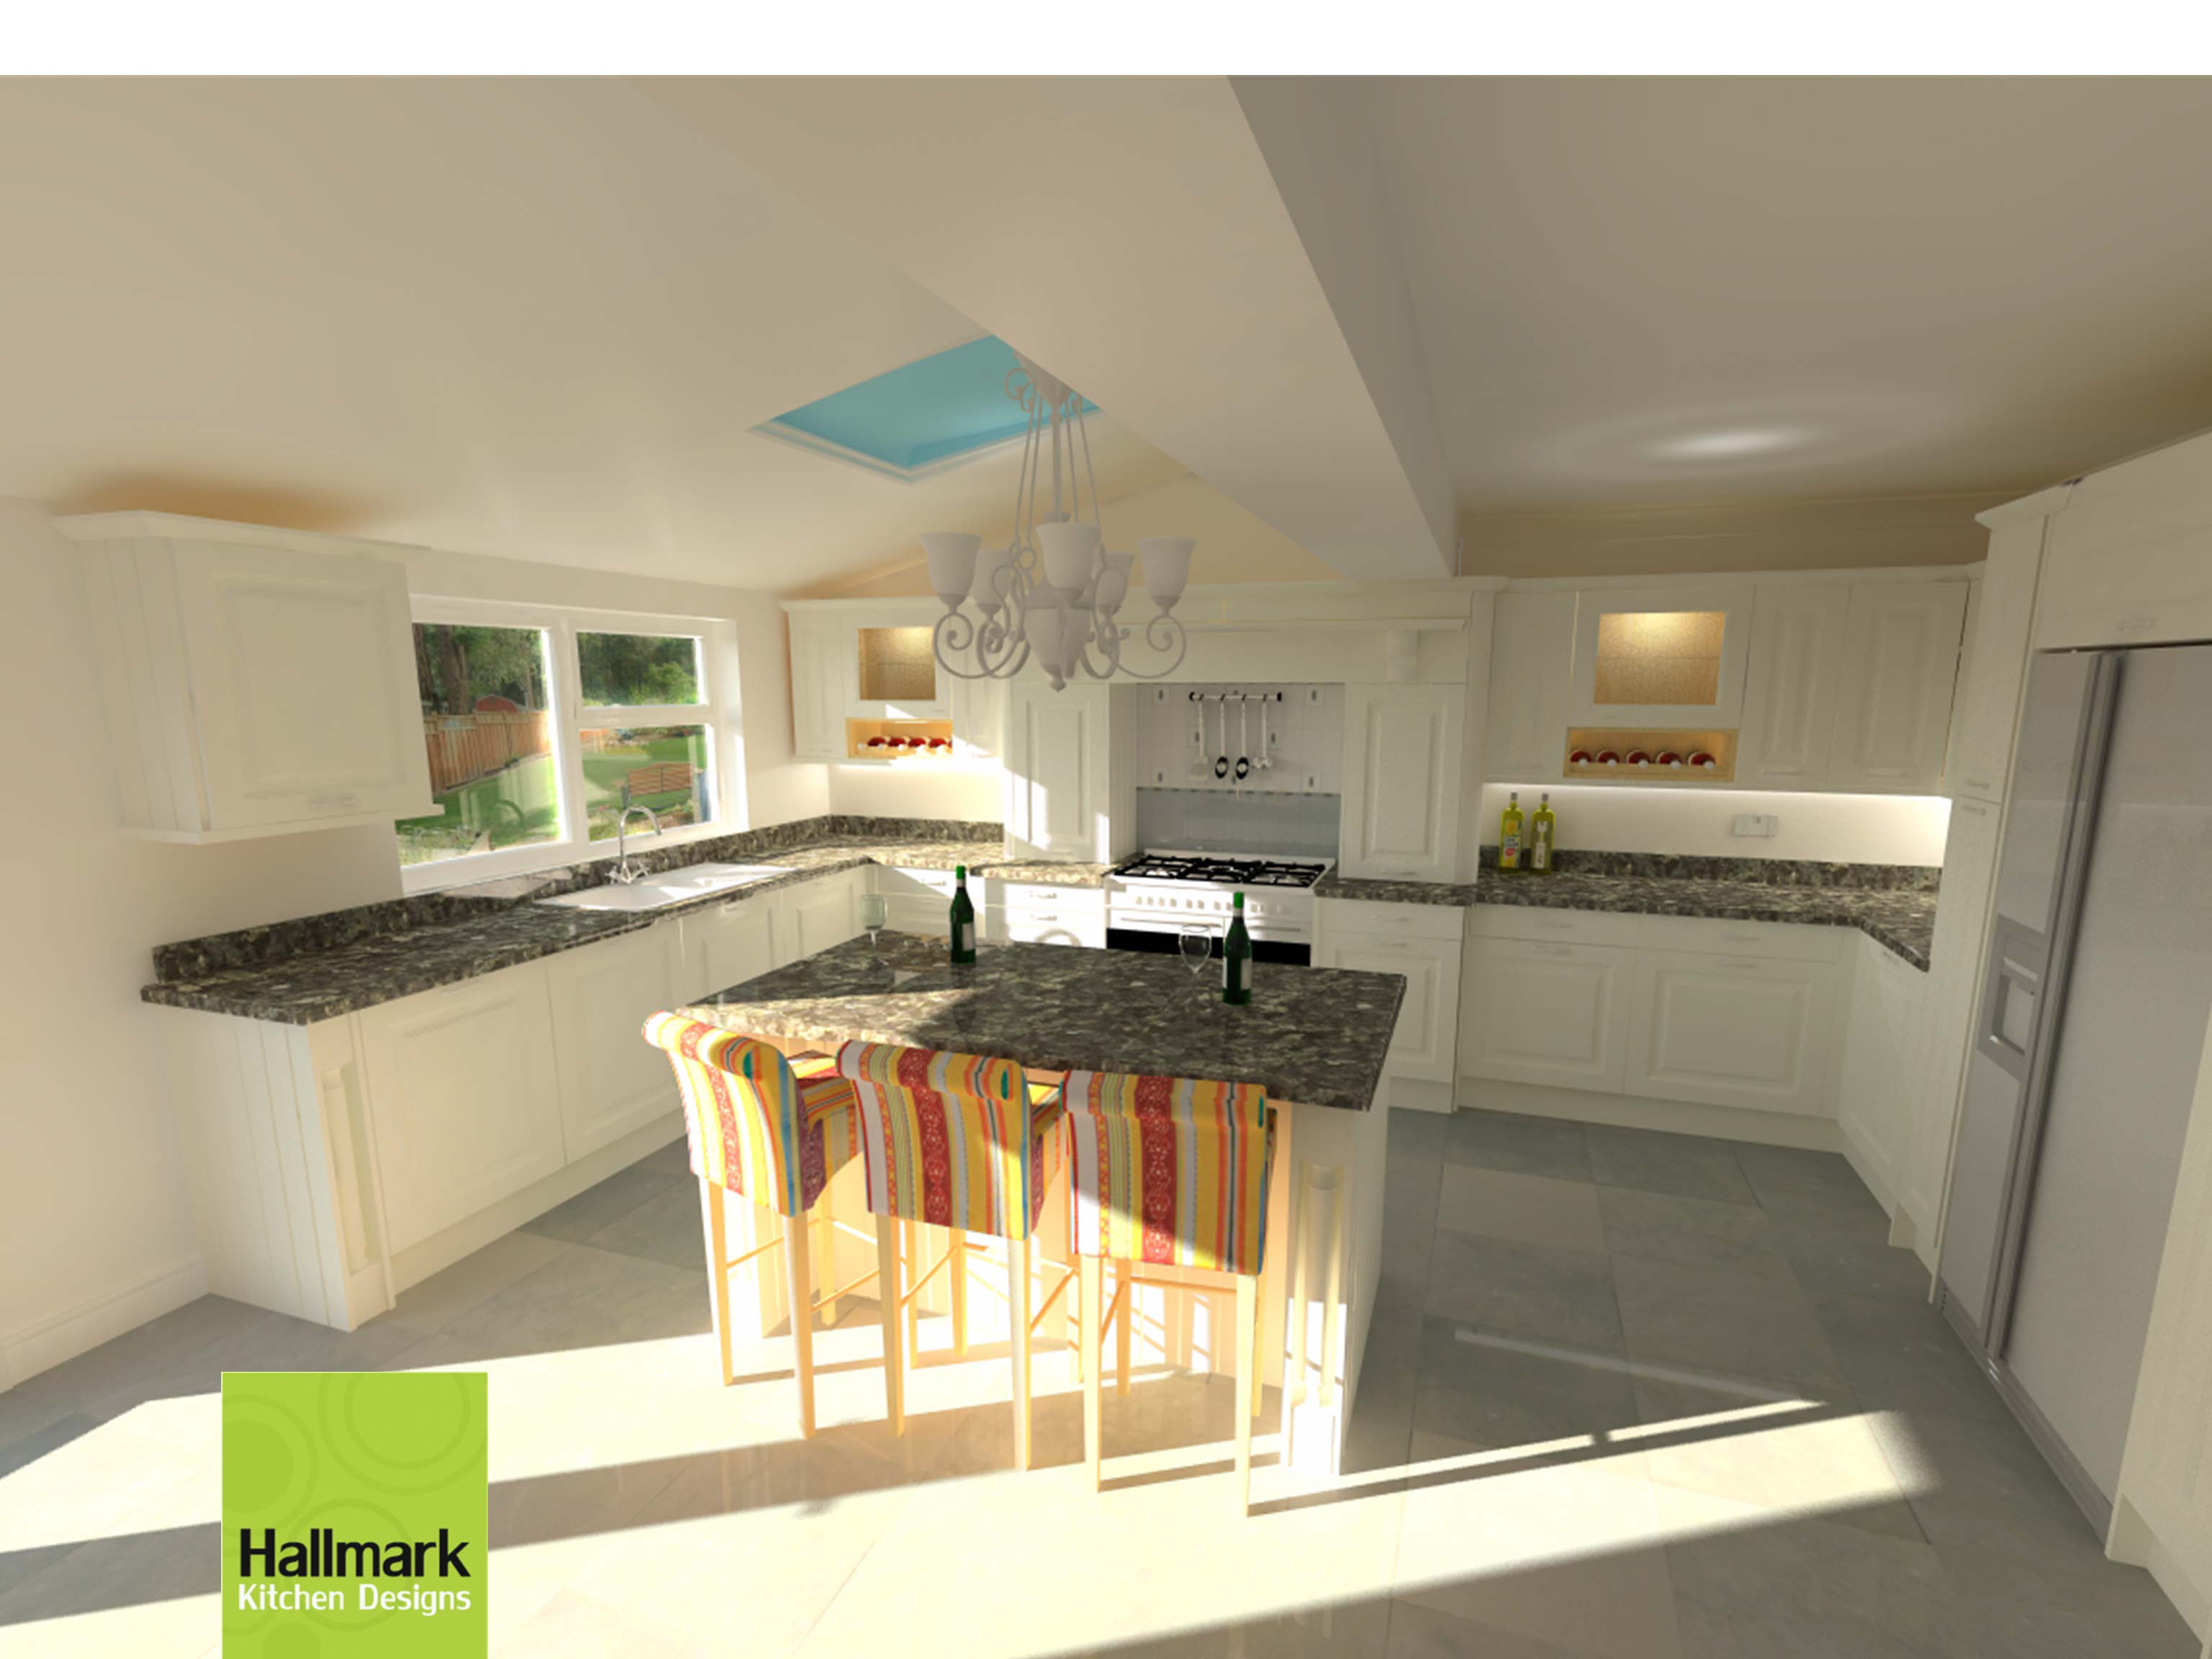 3d model render of kitchen design